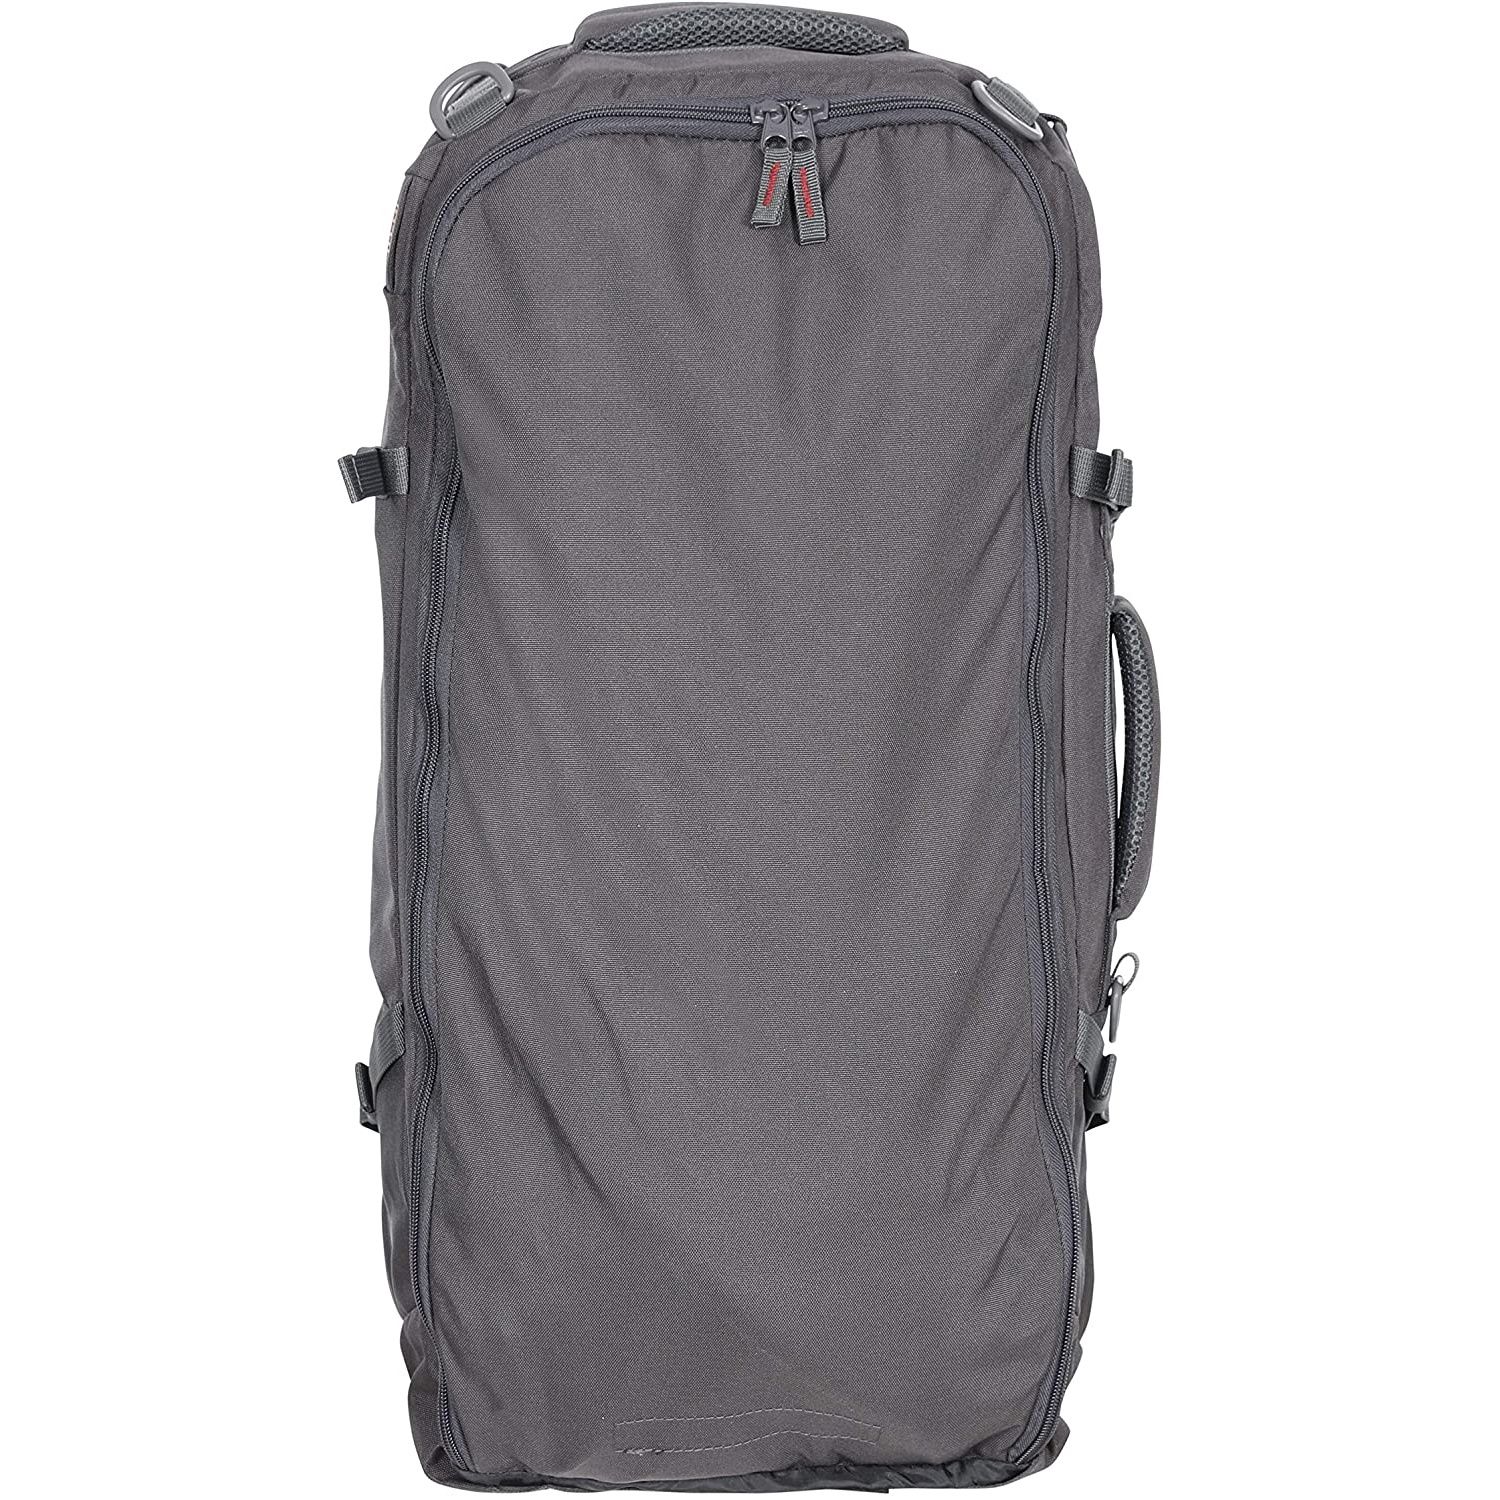 100% 600D Polyester ripstop. 65 litre rucksack. Detachable 10 litre backpack. Supportive back system. Load adjusting shoulder straps. Sturdy top carry handle.